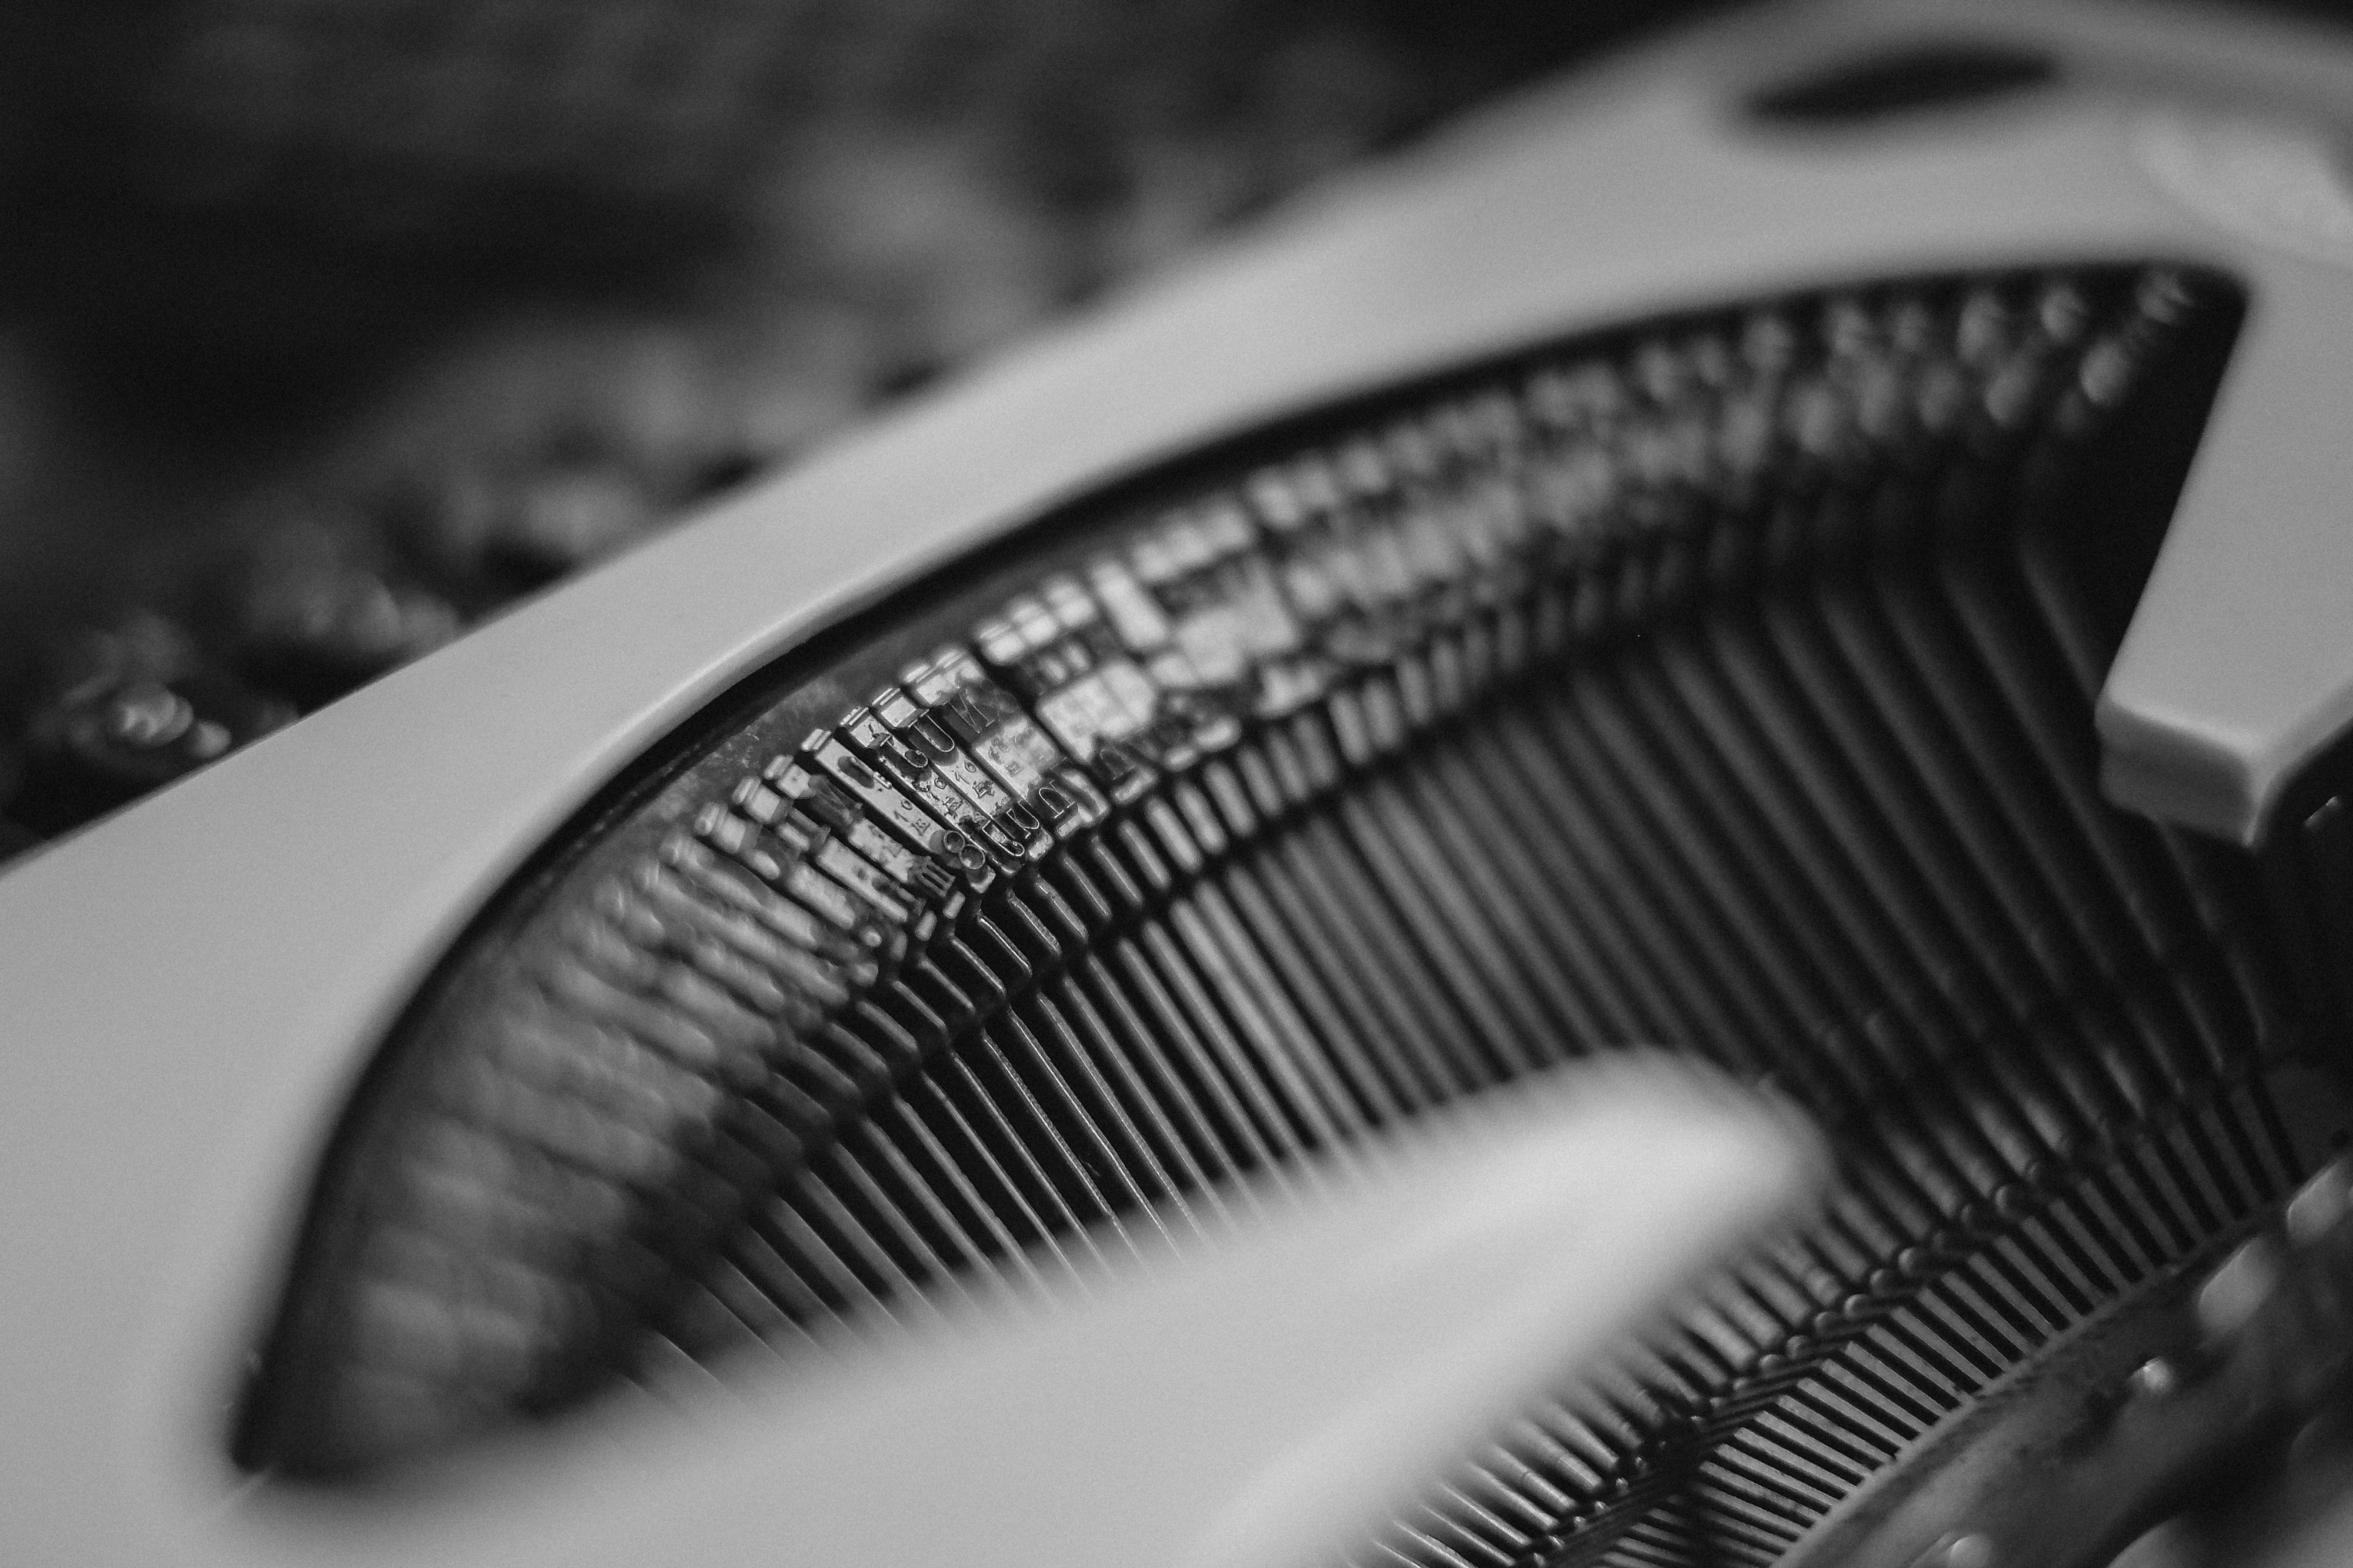 Closeup of a typewriter.